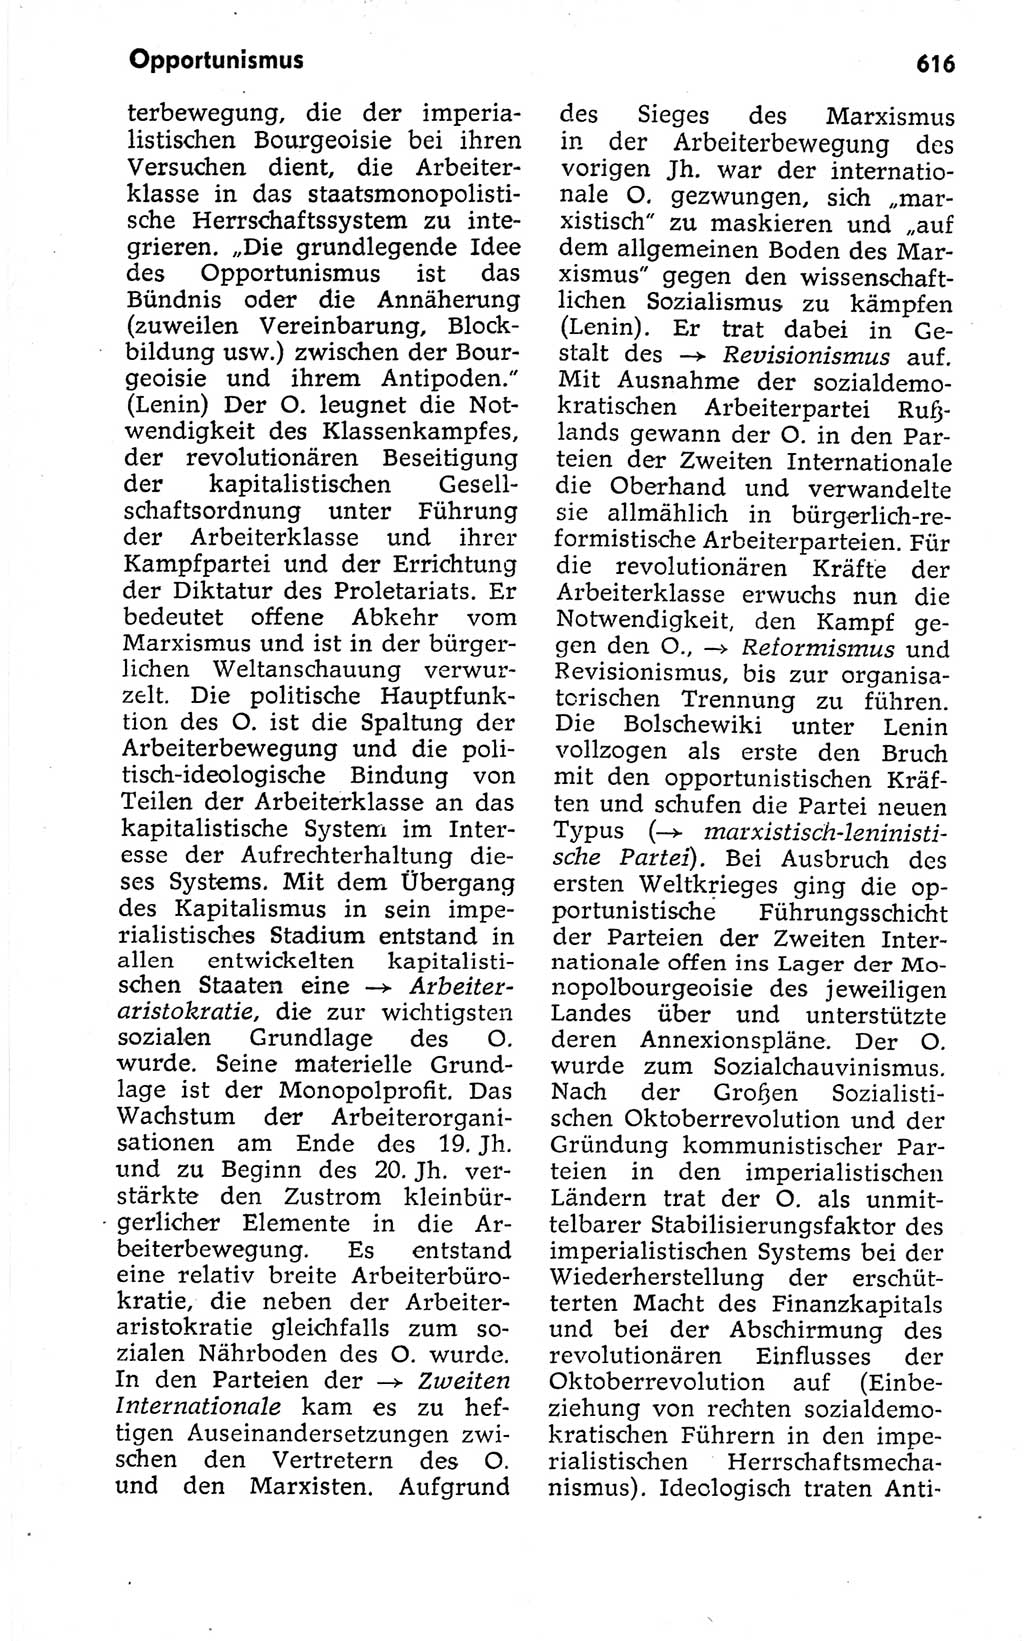 Kleines politisches Wörterbuch [Deutsche Demokratische Republik (DDR)] 1973, Seite 616 (Kl. pol. Wb. DDR 1973, S. 616)